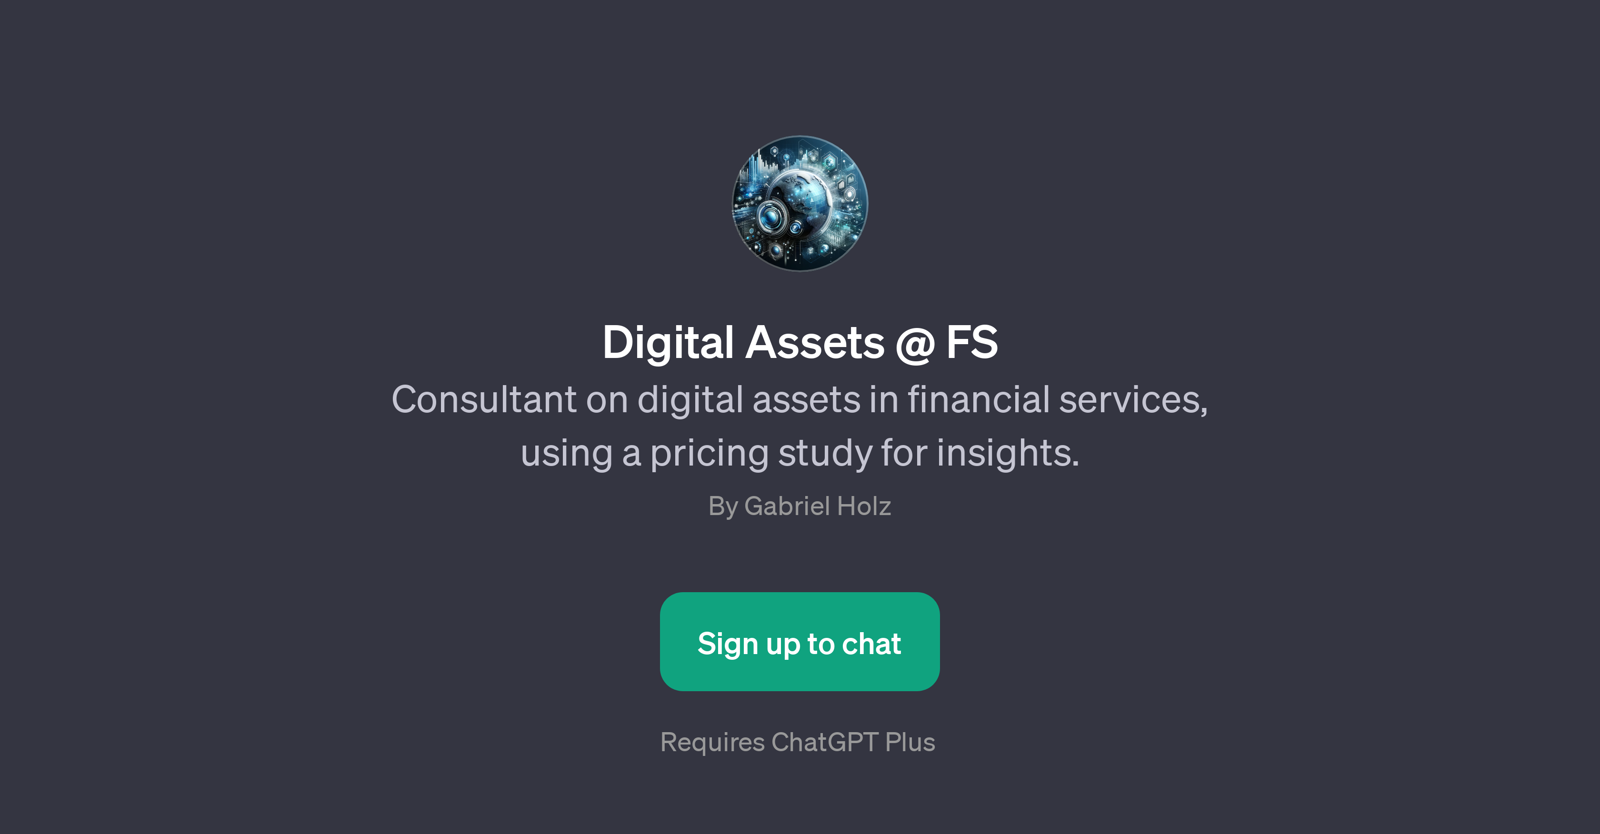 Digital Assets @ FS website